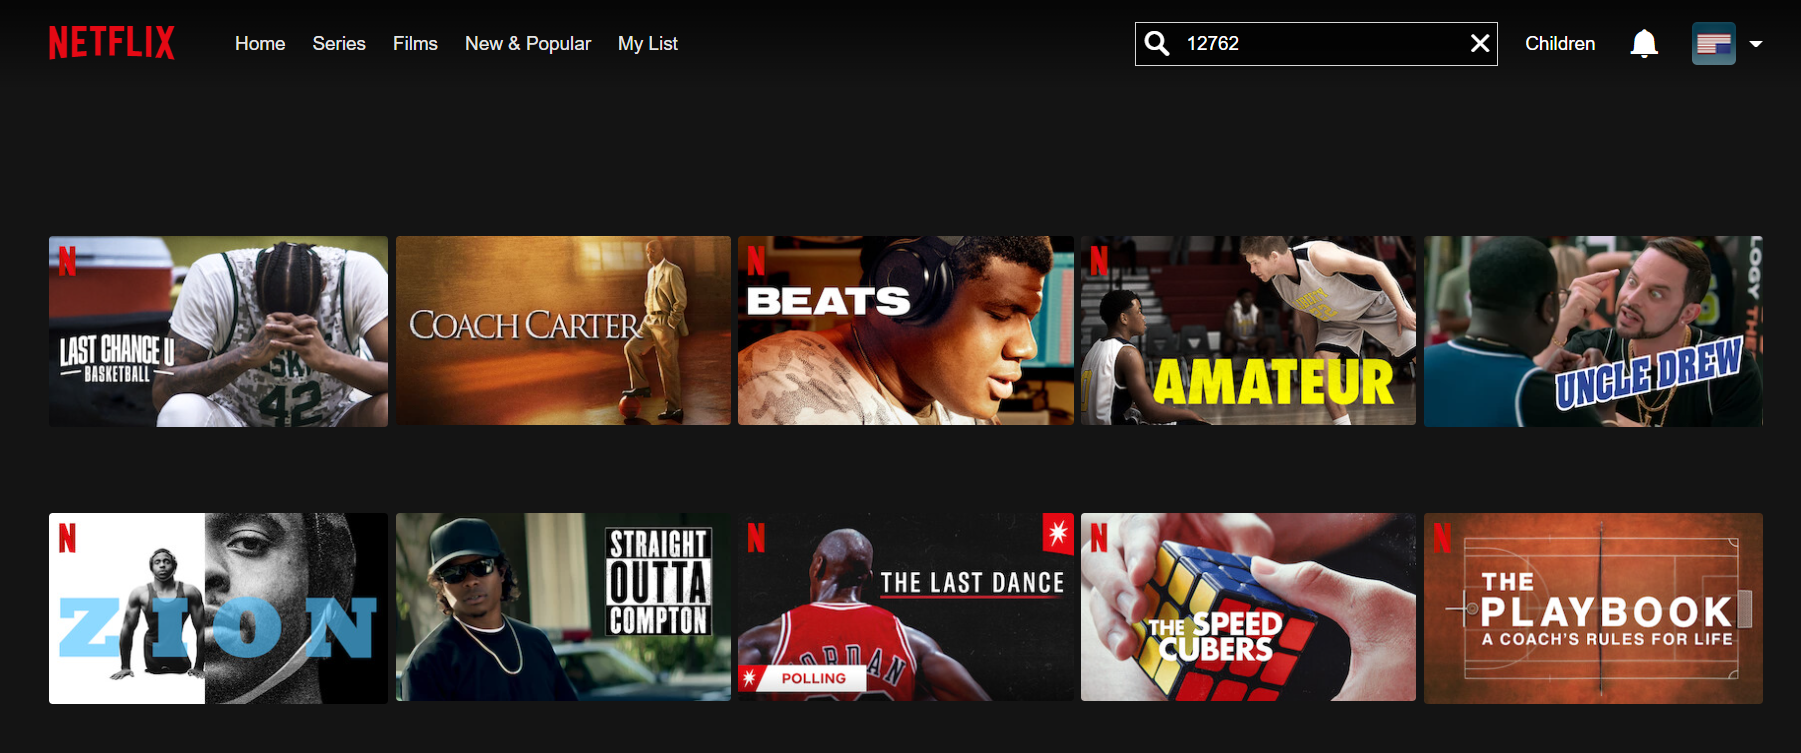 Поиск Netflix, показывающий фильмы о баскетболе